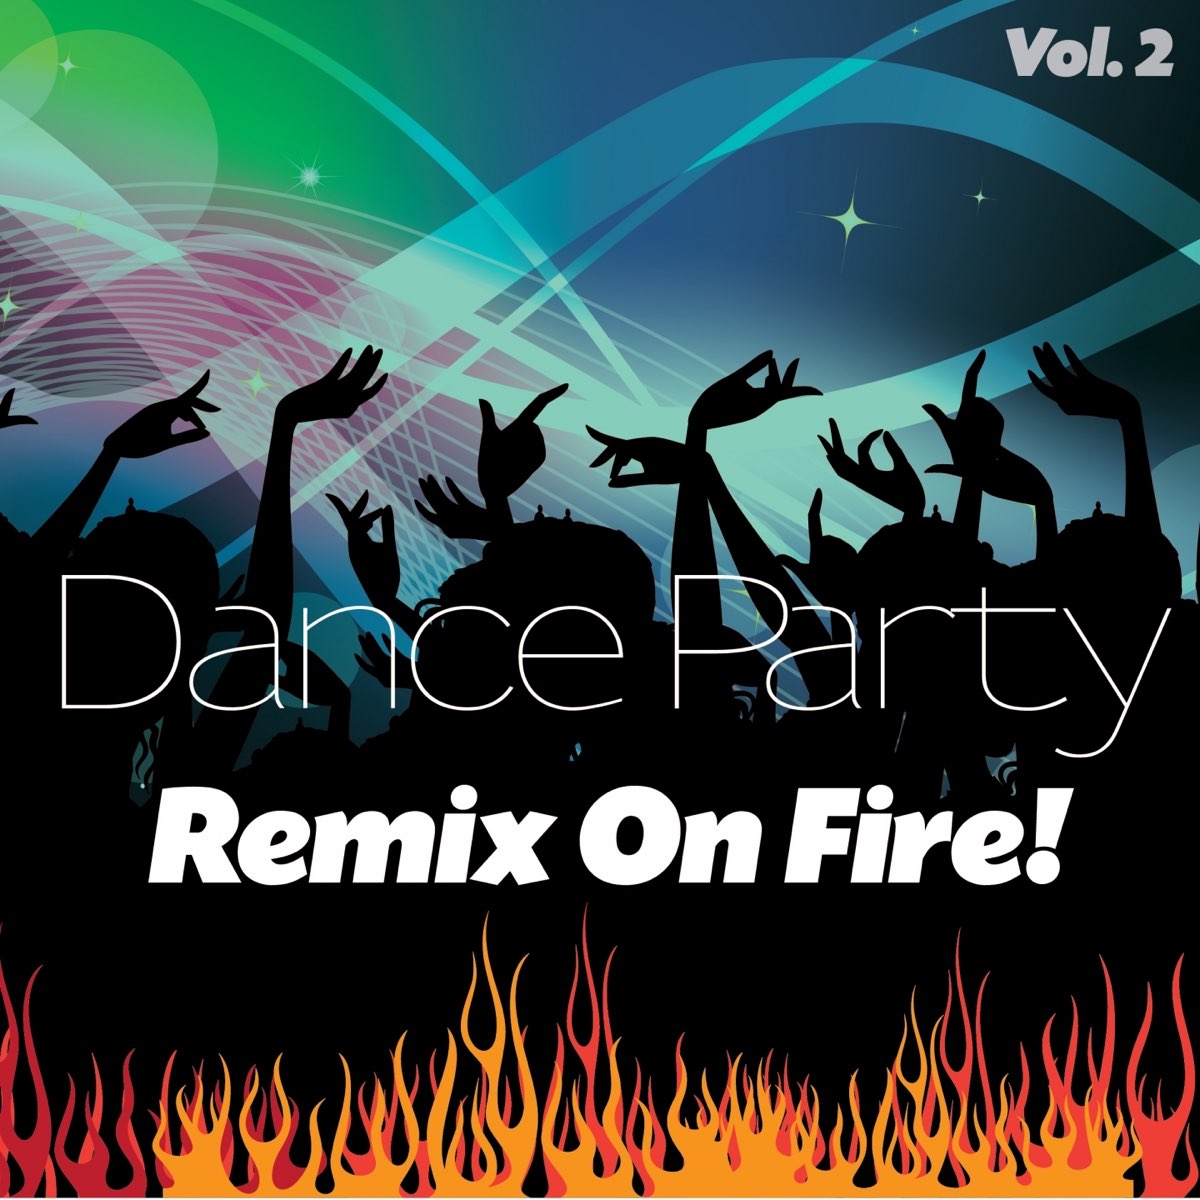 Dance party remix